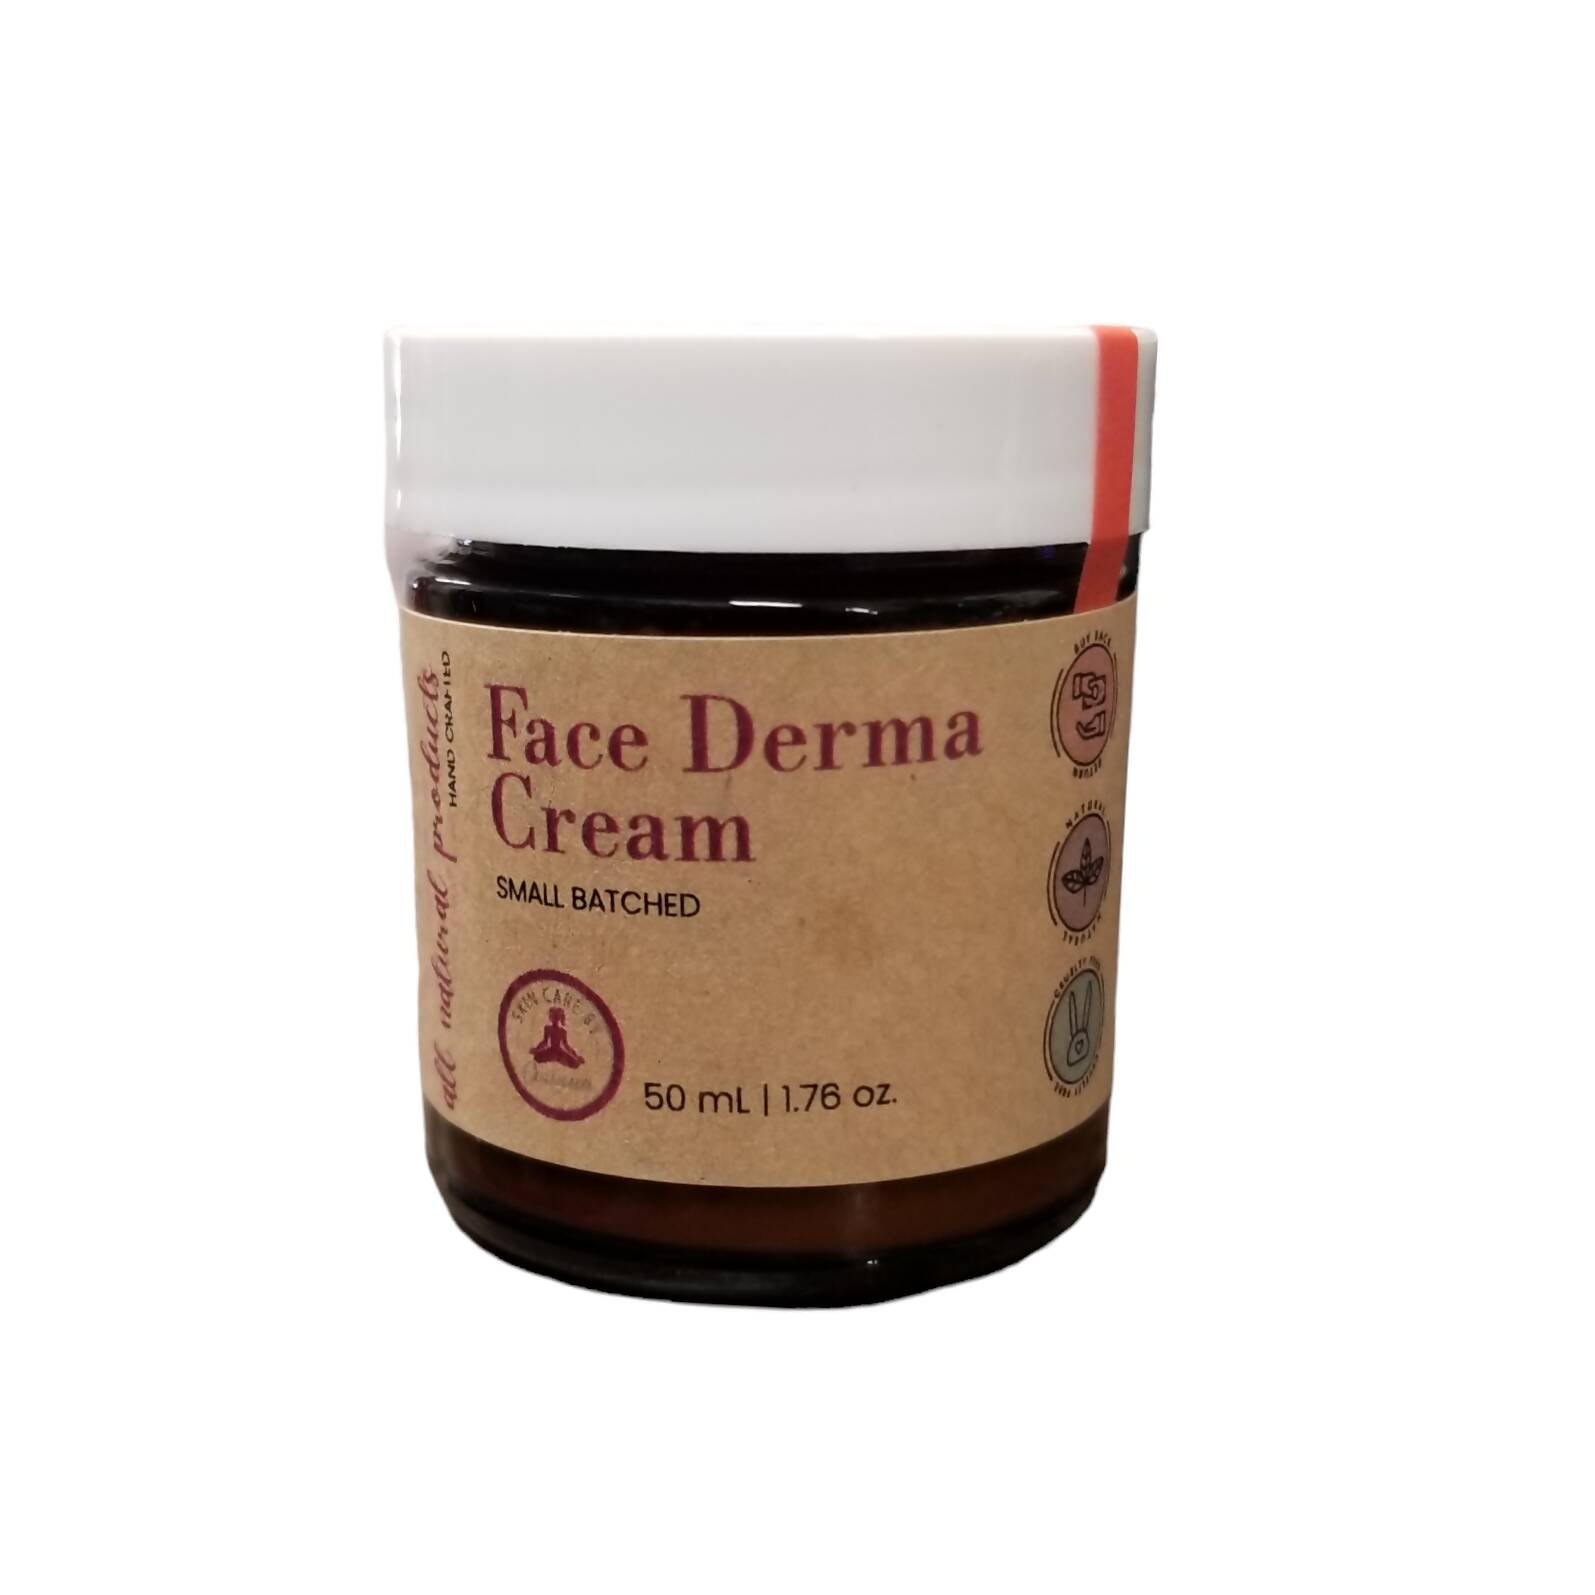 Face Derma Cream